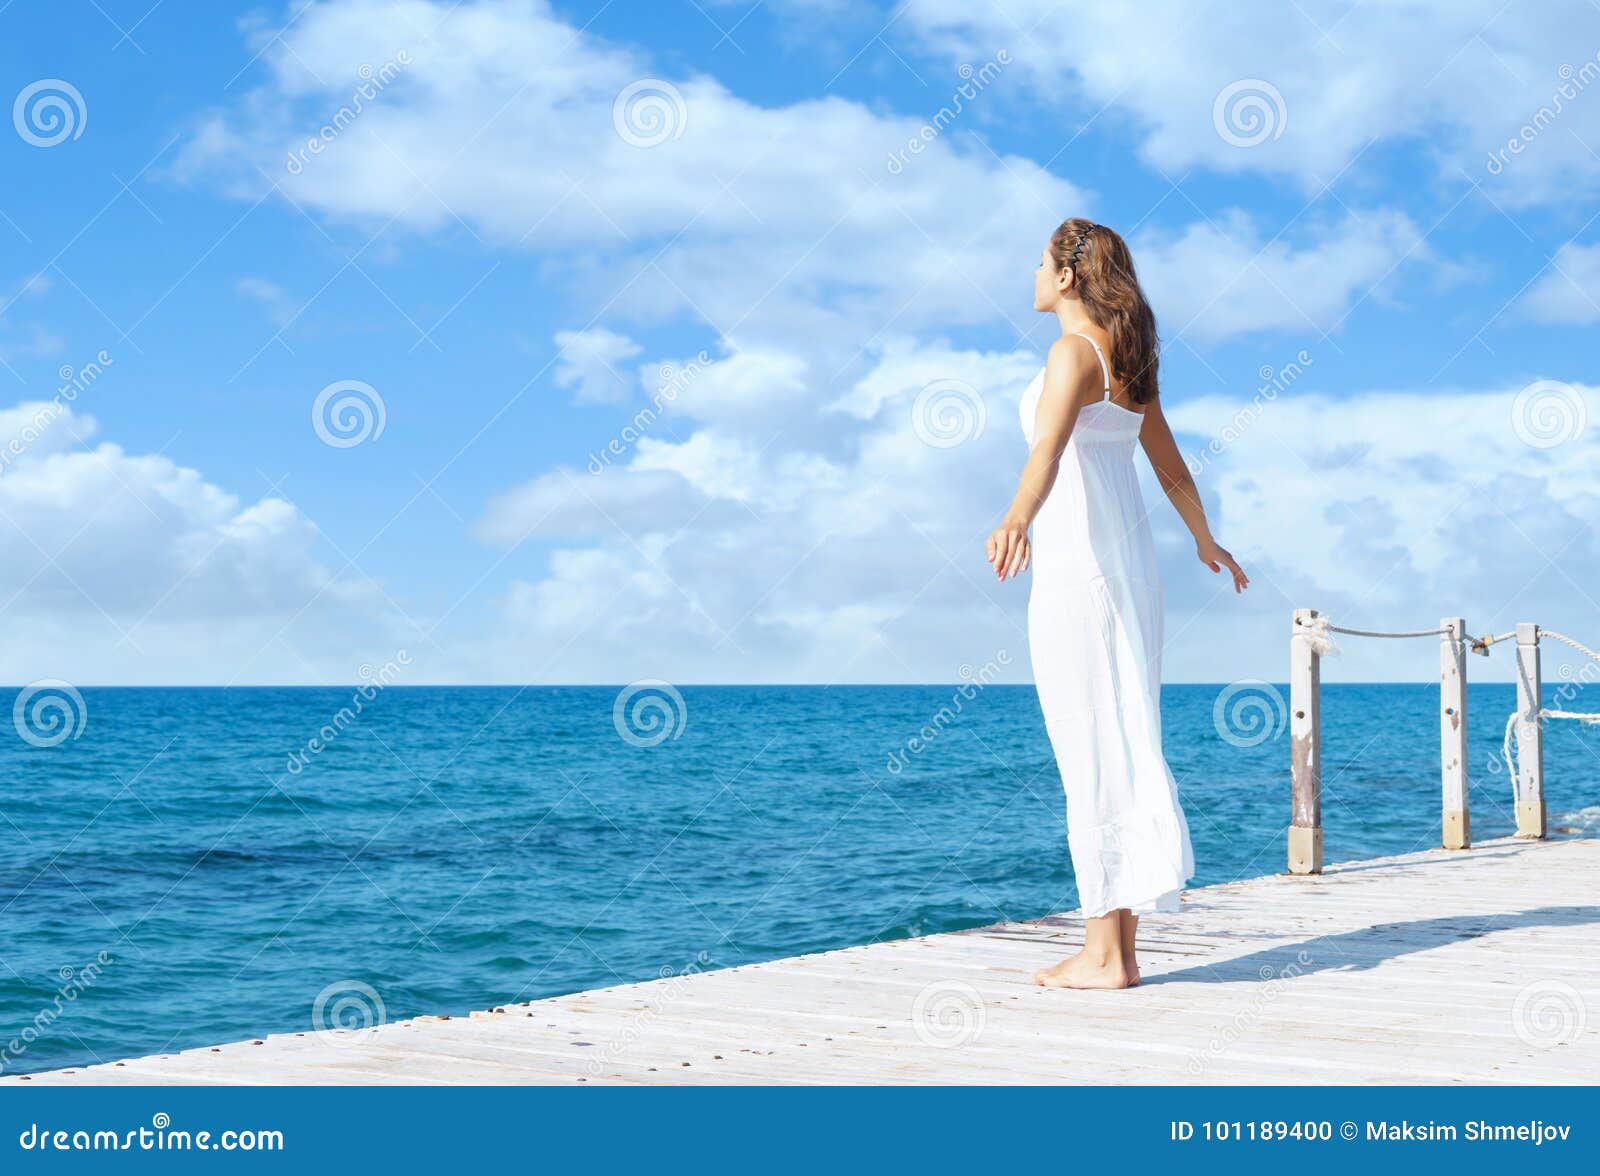 Πίσω άποψη μιας νέας γυναίκας που στέκεται σε μια αποβάθρα Πλάτη θάλασσας  και ουρανού Στοκ Εικόνες - εικόνα από sunlight, lifestyle: 101189400